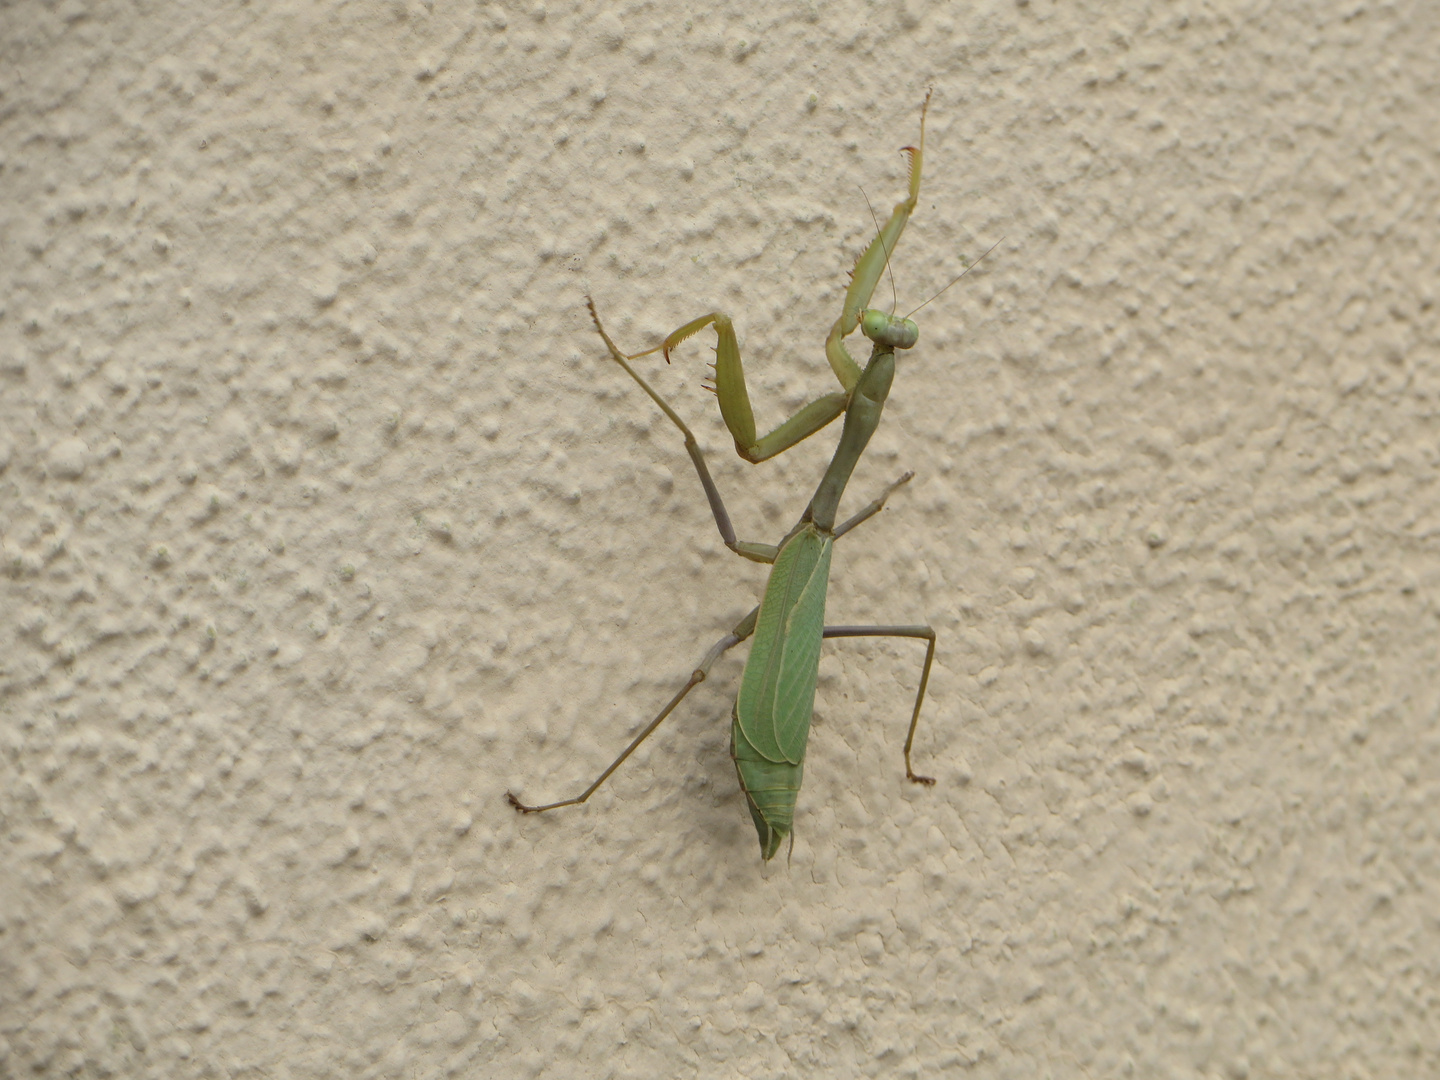 Gottesanbeterin - Praying Mantis